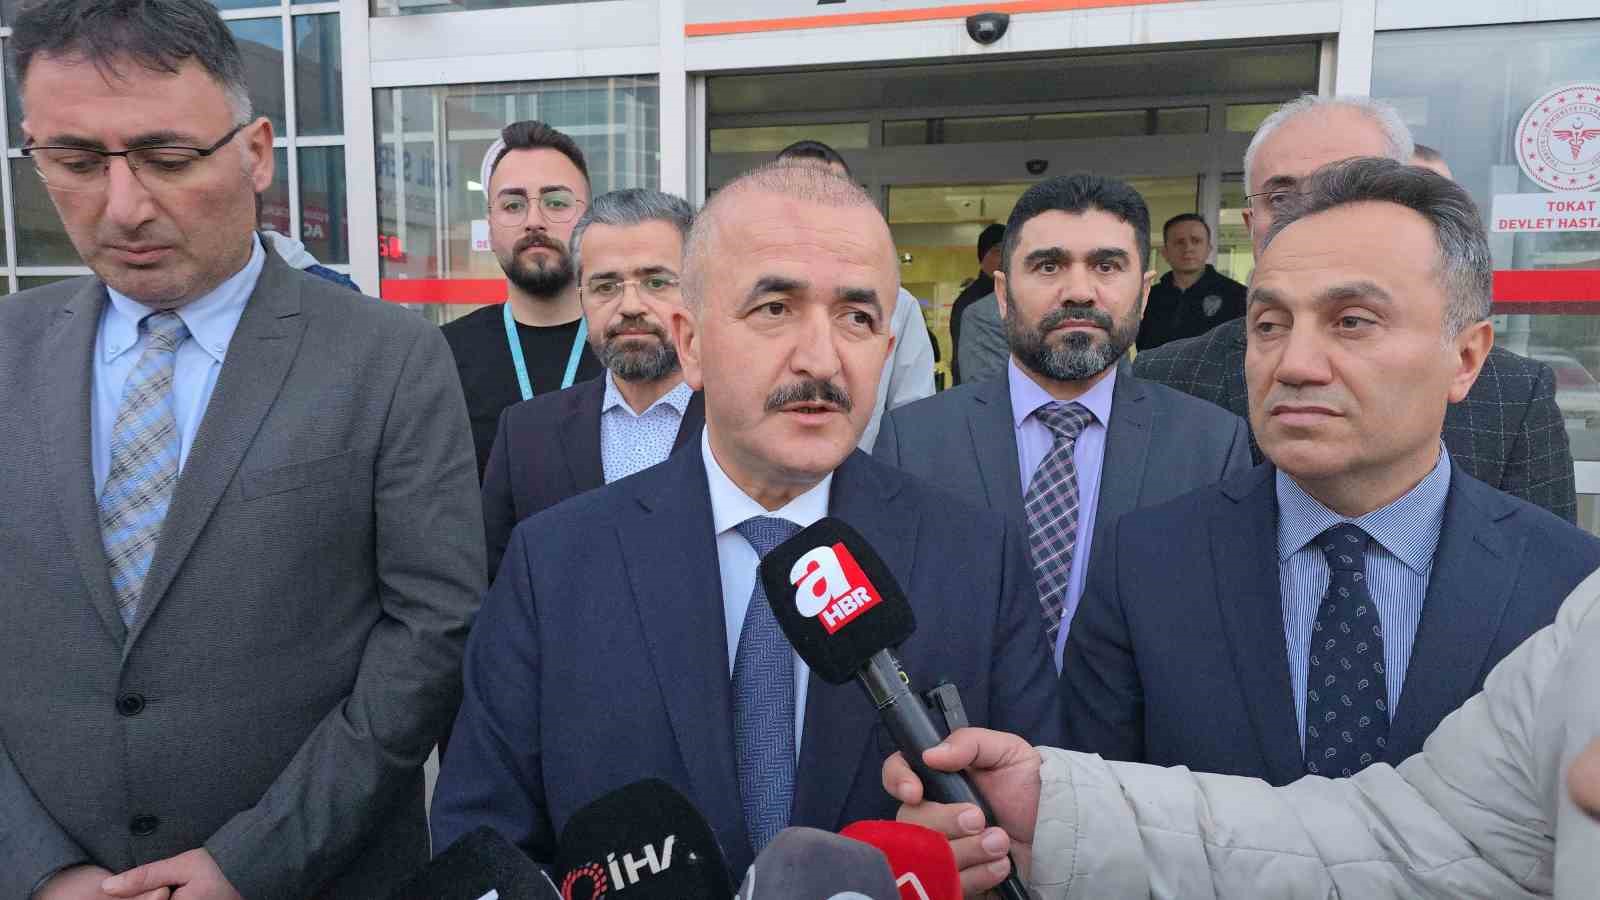 Vali Hatipoğlu: "Destici yarın taburcu olacak"